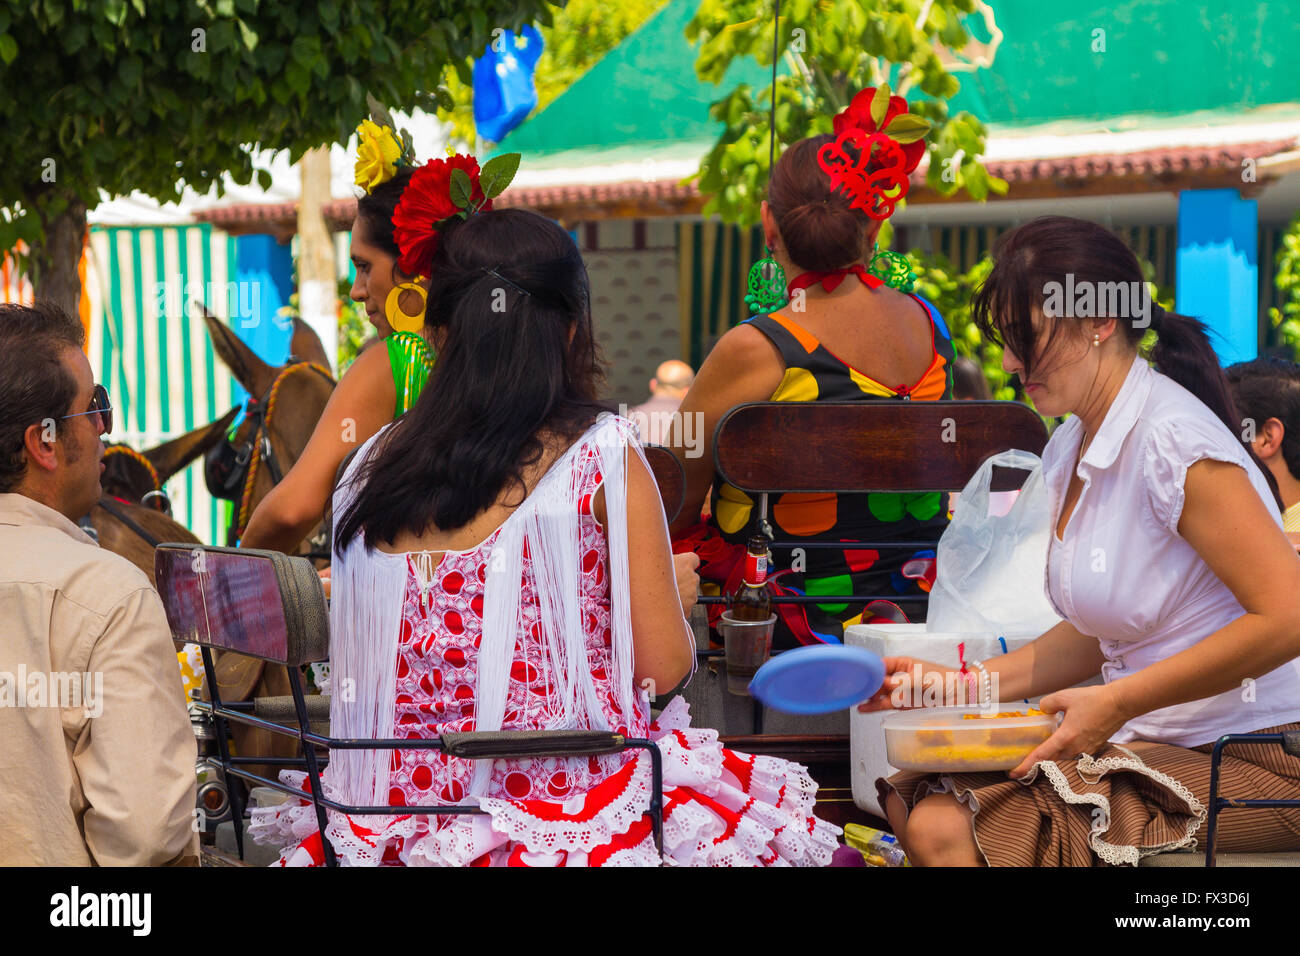 ANDUJAR,Spagna - settembre, 6: Donne tipico sivigliano tute flamenca, passeggiate in automobile in fiera cavalli su settembre, 6, 2014 Foto Stock